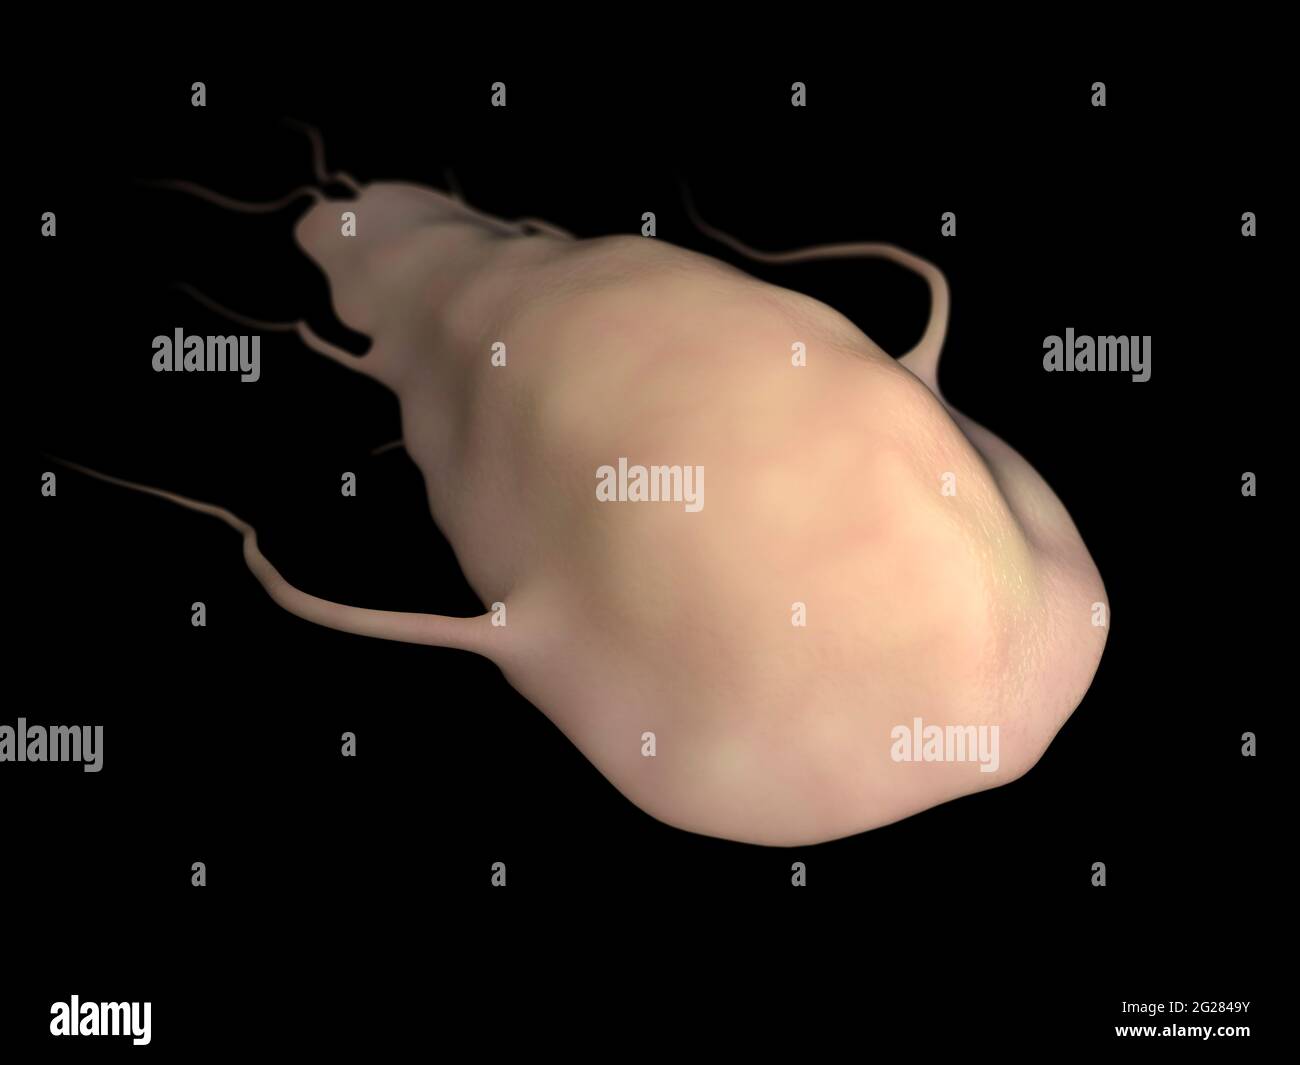 Ilustración biomédica del parásito Giardia, sobre fondo negro. Foto de stock